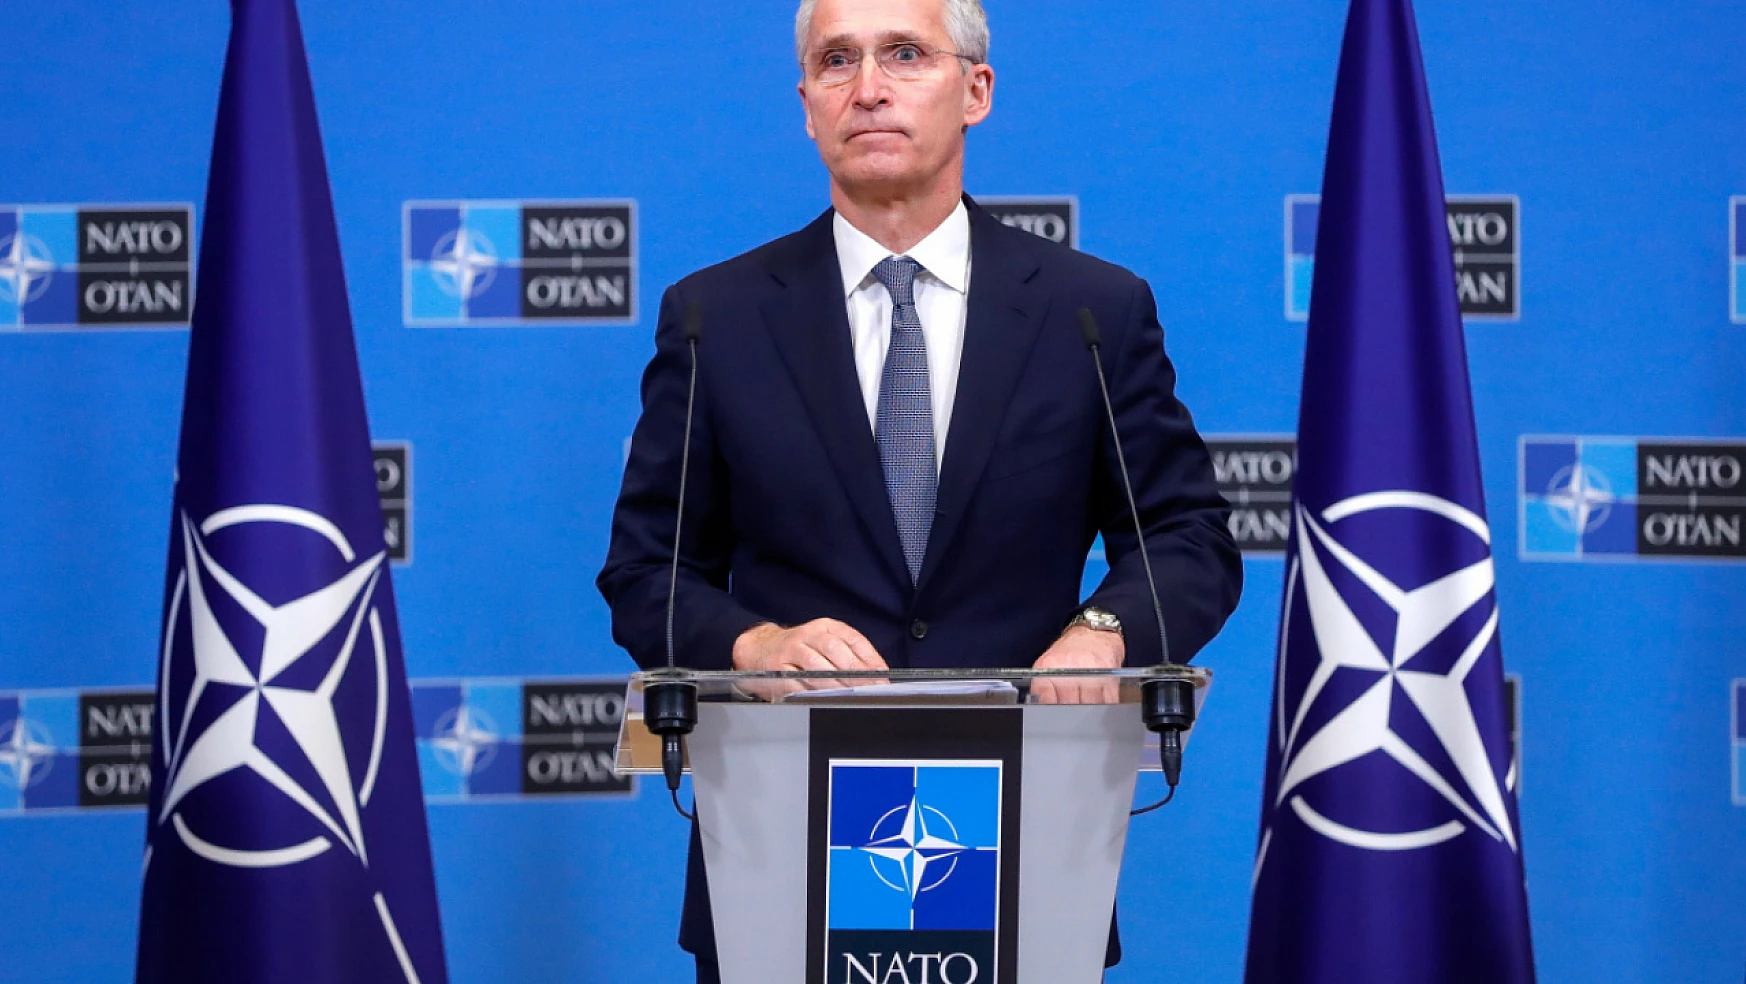 NATO Genel Sekreteri Stoltenberg: Müttefikimizle dayanışma içerisindeyiz